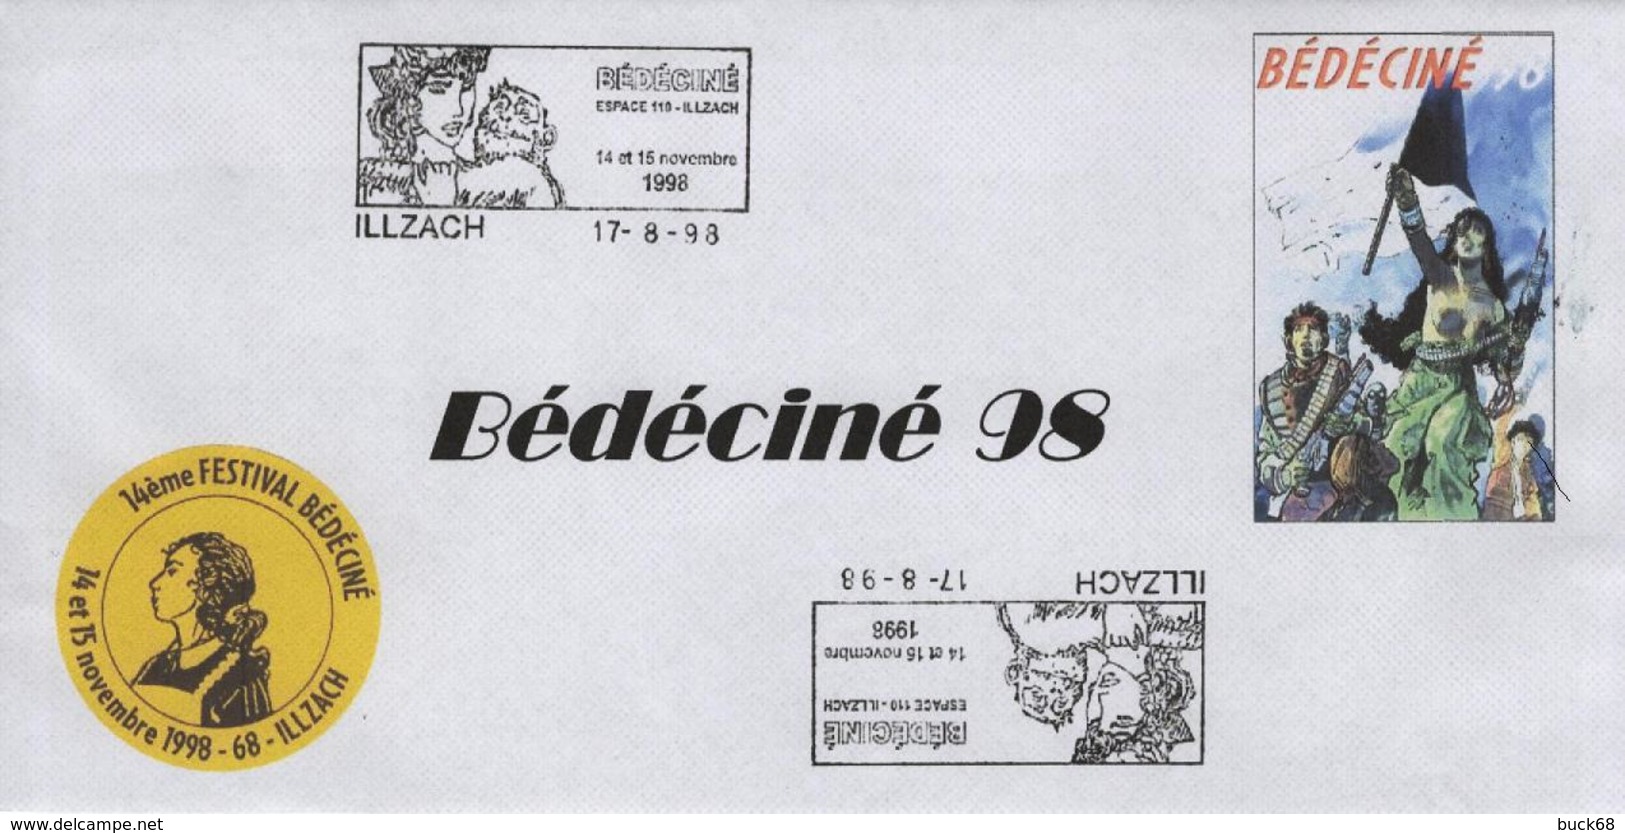 BEDECINE 1998 ILLZACH & BEHE Enveloppe + Cachet Temporaire + Rappel + Flamme + Badge Imprimé Comics Strip Bédé Cartoon - Bandes Dessinées